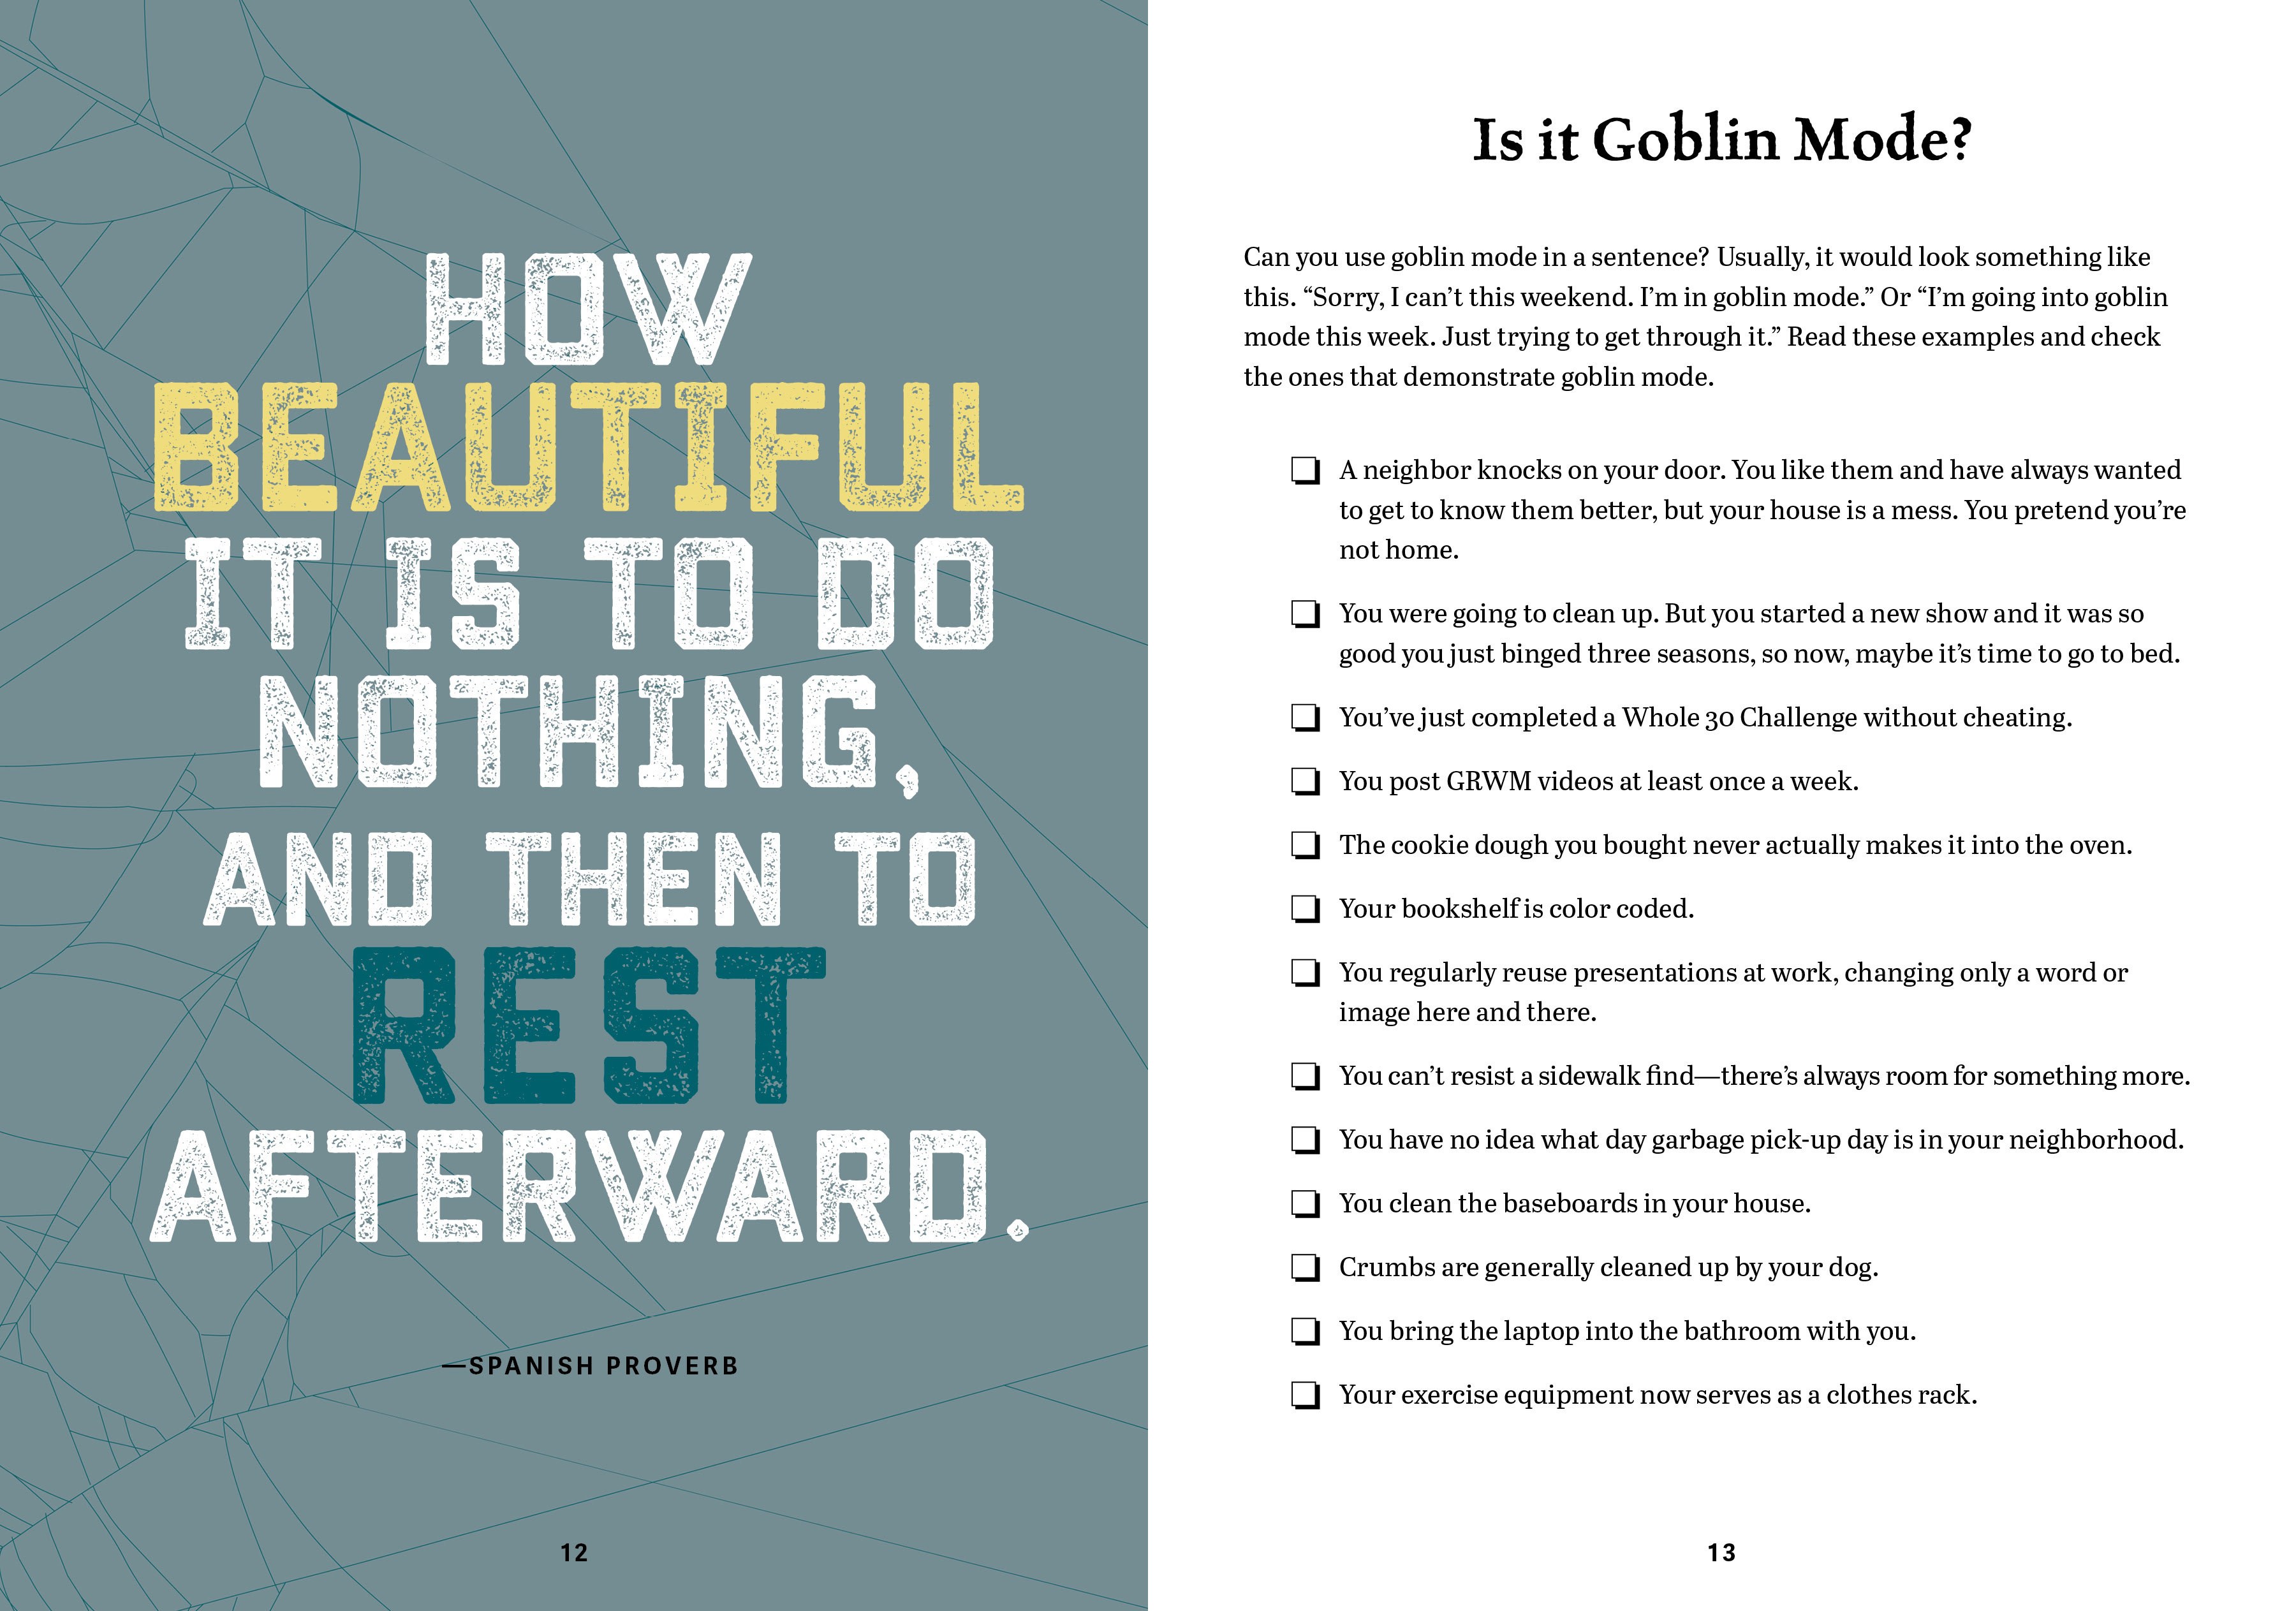 Goblin Mode Guide to Life